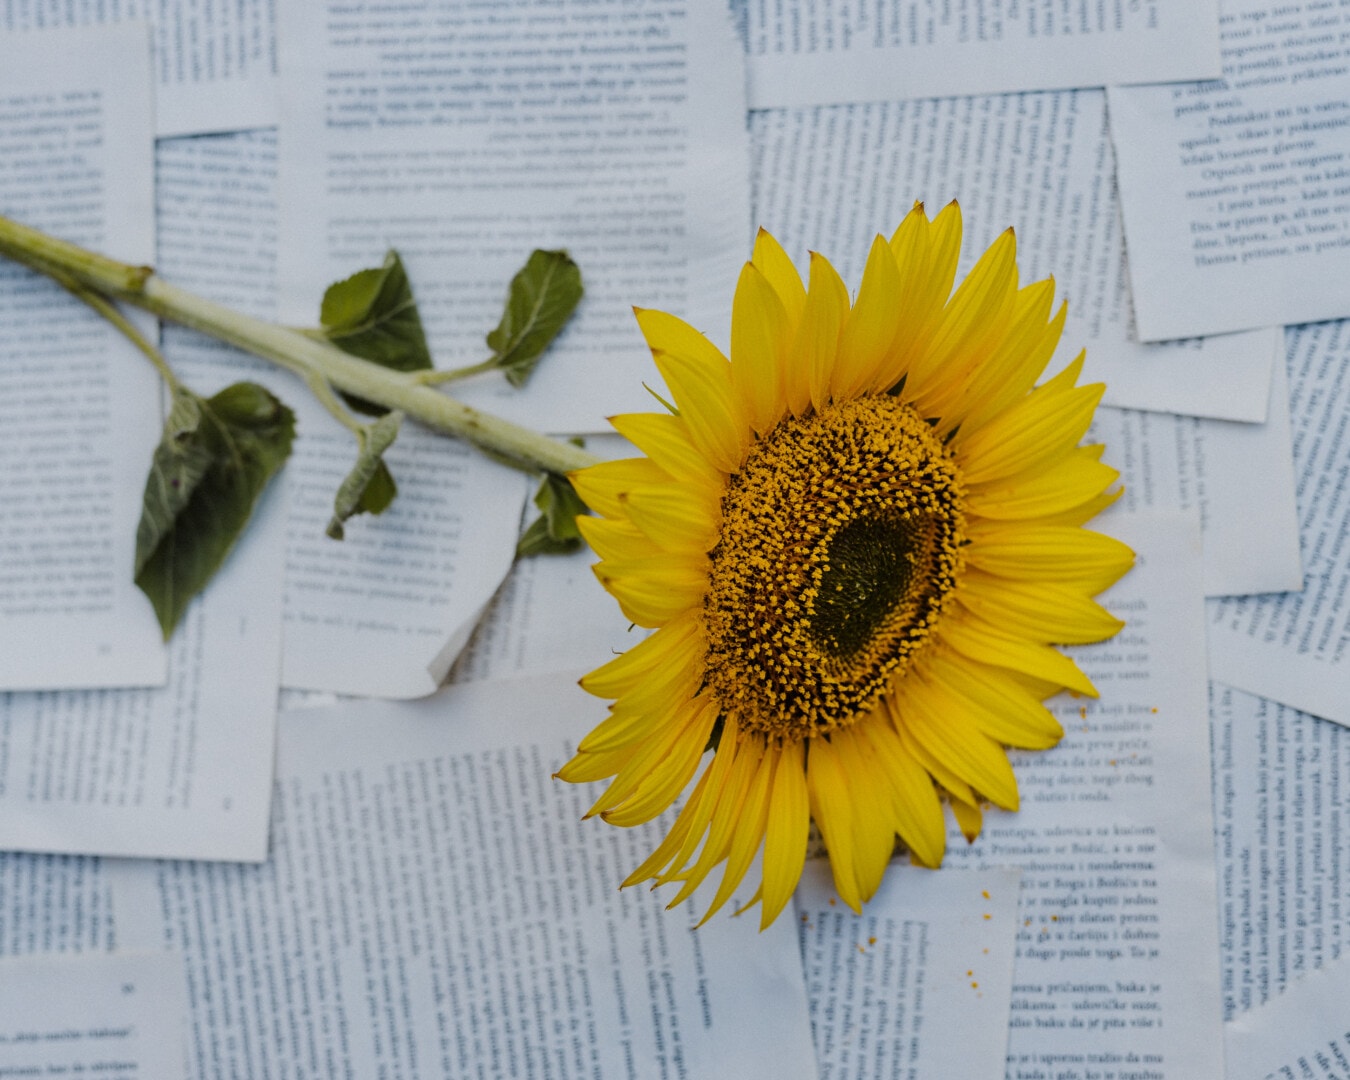 zonnebloem, papier, fotografie, krant, fotostudio, plant, geel, bloem, tekst, helder